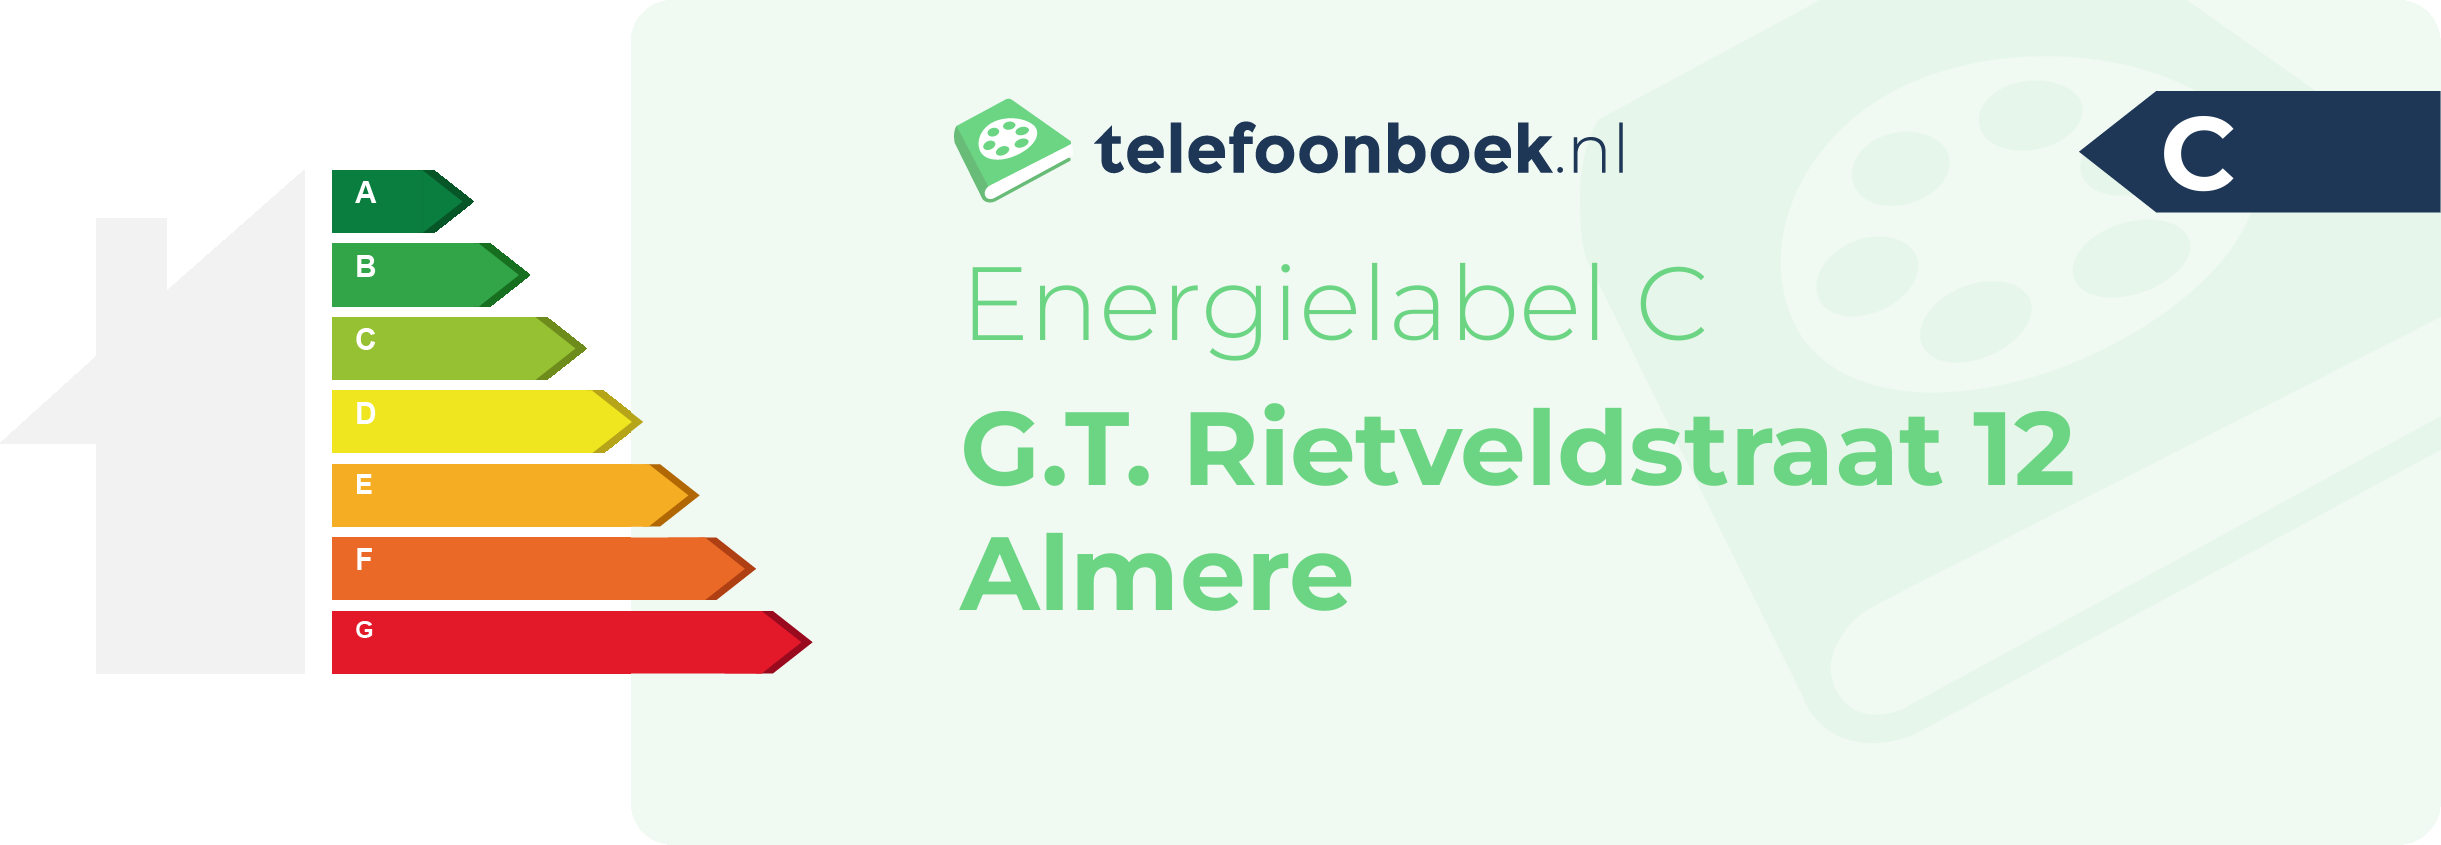 Energielabel G.T. Rietveldstraat 12 Almere